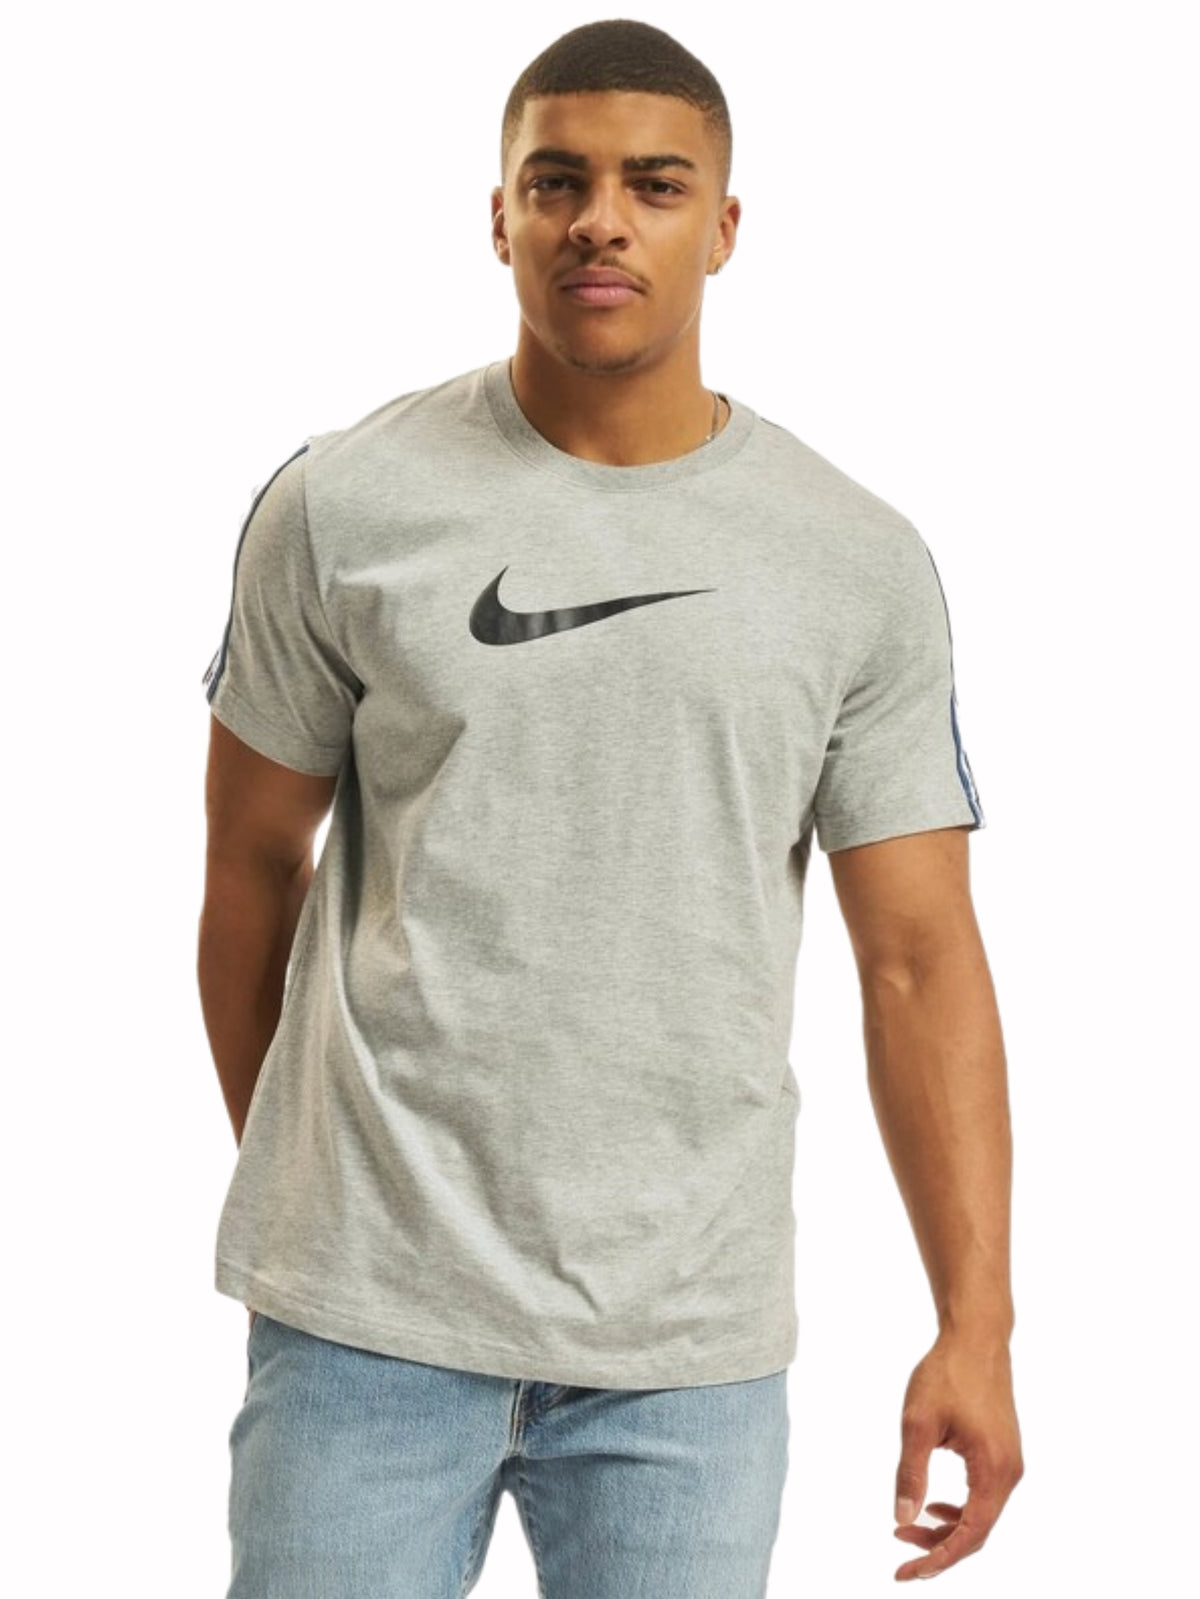 NIKE_TSHIRT_DM4685 Nike | Mens Repeat T-Shirt RAWDENIM RAWDENIM